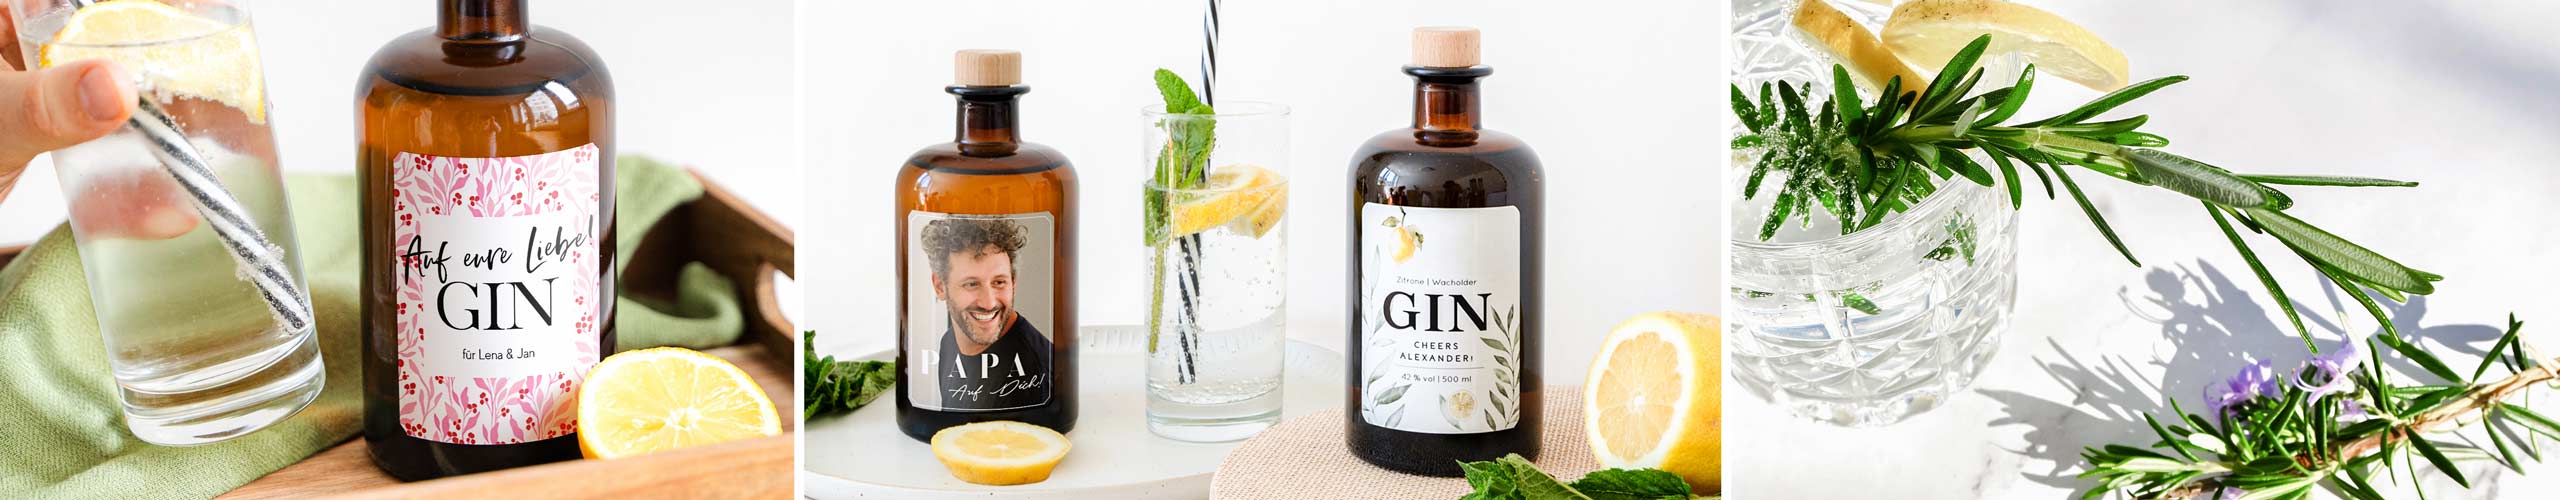 Verschiedene Gin-Flaschen mit personalisierten Etiketten